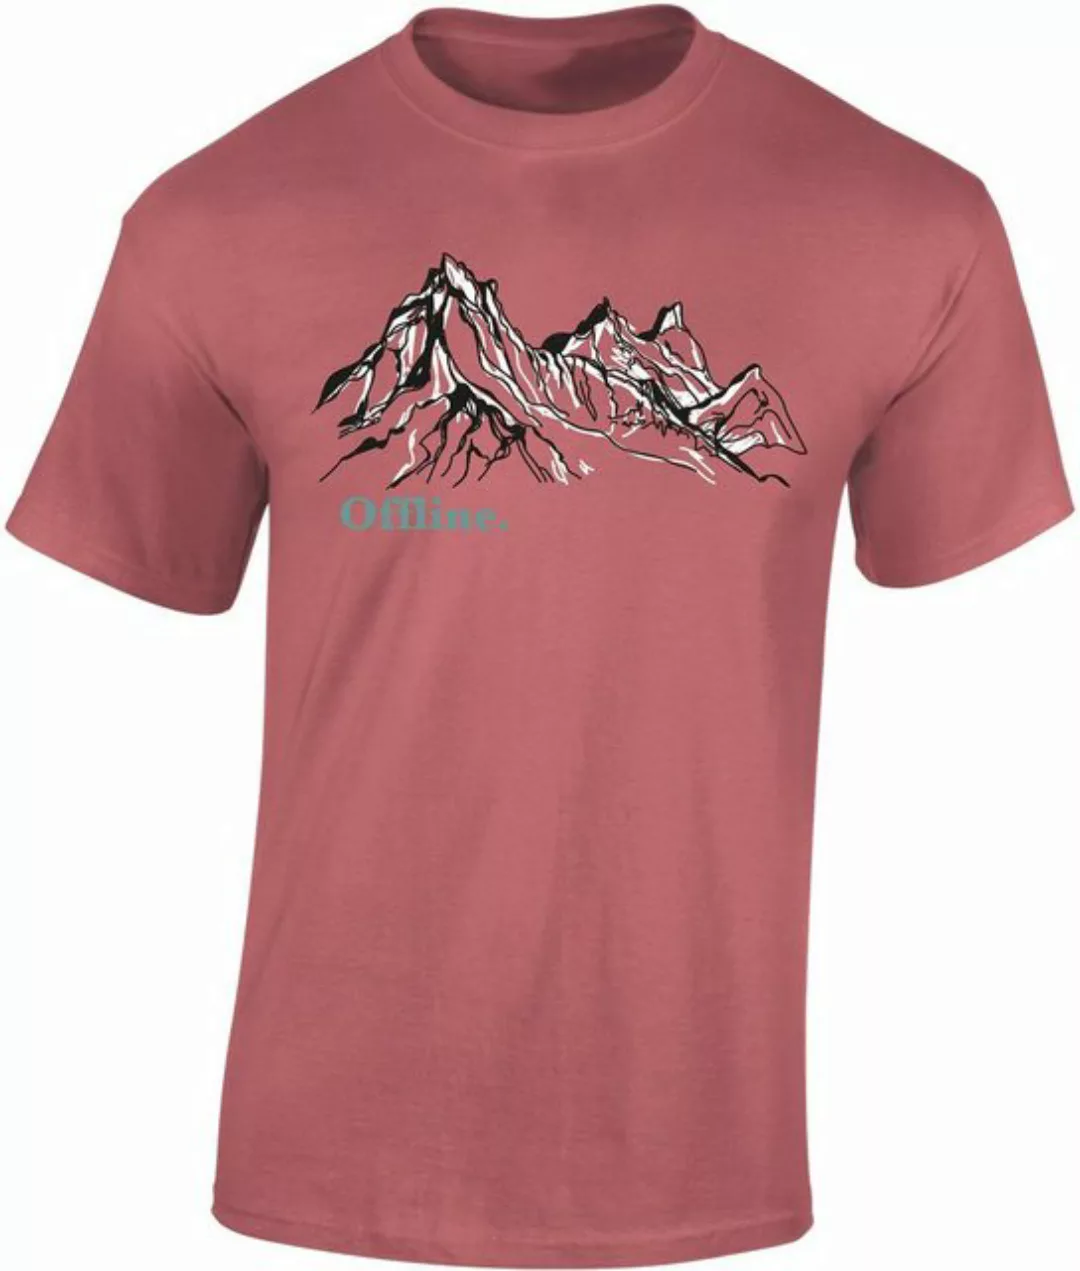 Baddery Print-Shirt Wander Tshirt: "Offline" - Kletter T-Shirt für Wanderfr günstig online kaufen